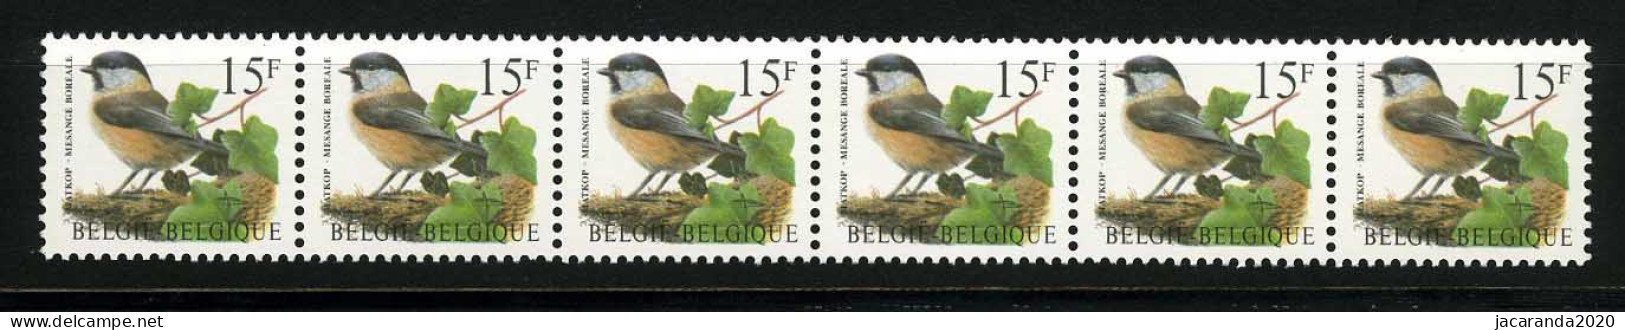 België R81a - Vogels - Oiseaux - Buzin (2732) - Strook Van 6 ZONDER NUMMER - SANS NUMERO - ZELDZAAM - RARE - LUXE - Coil Stamps